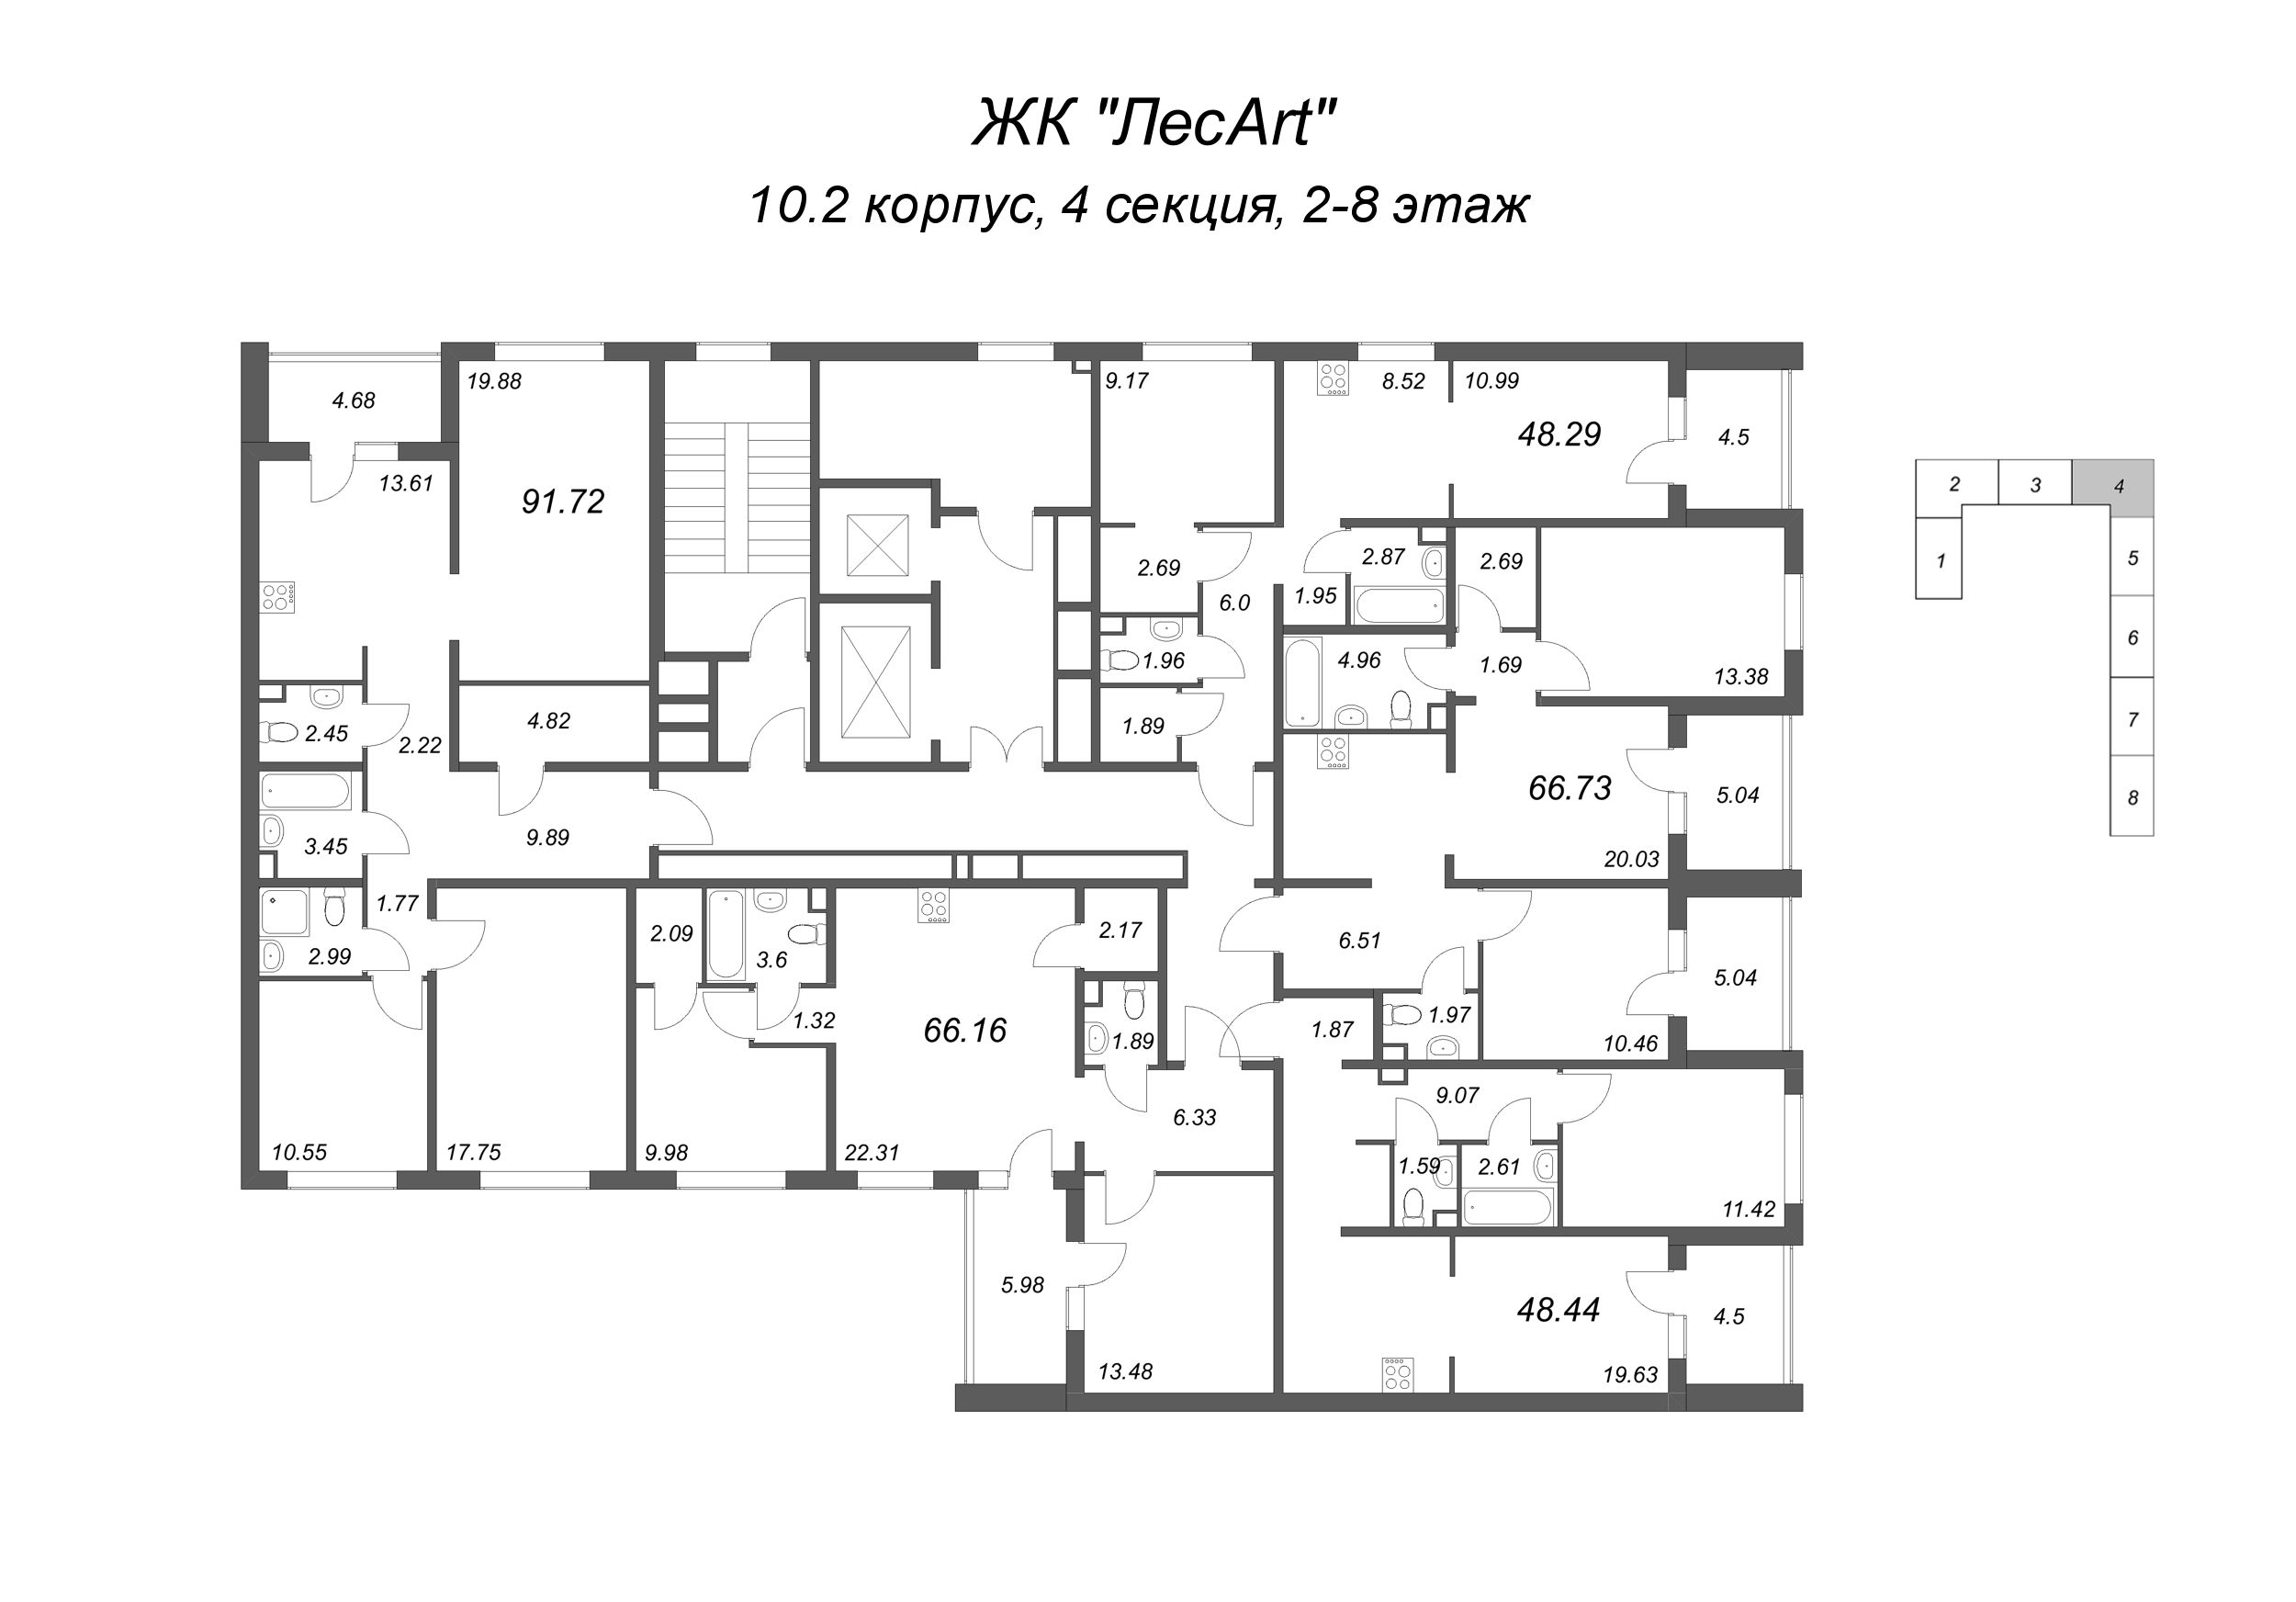 3-комнатная квартира, 91.72 м² в ЖК "ЛесArt" - планировка этажа